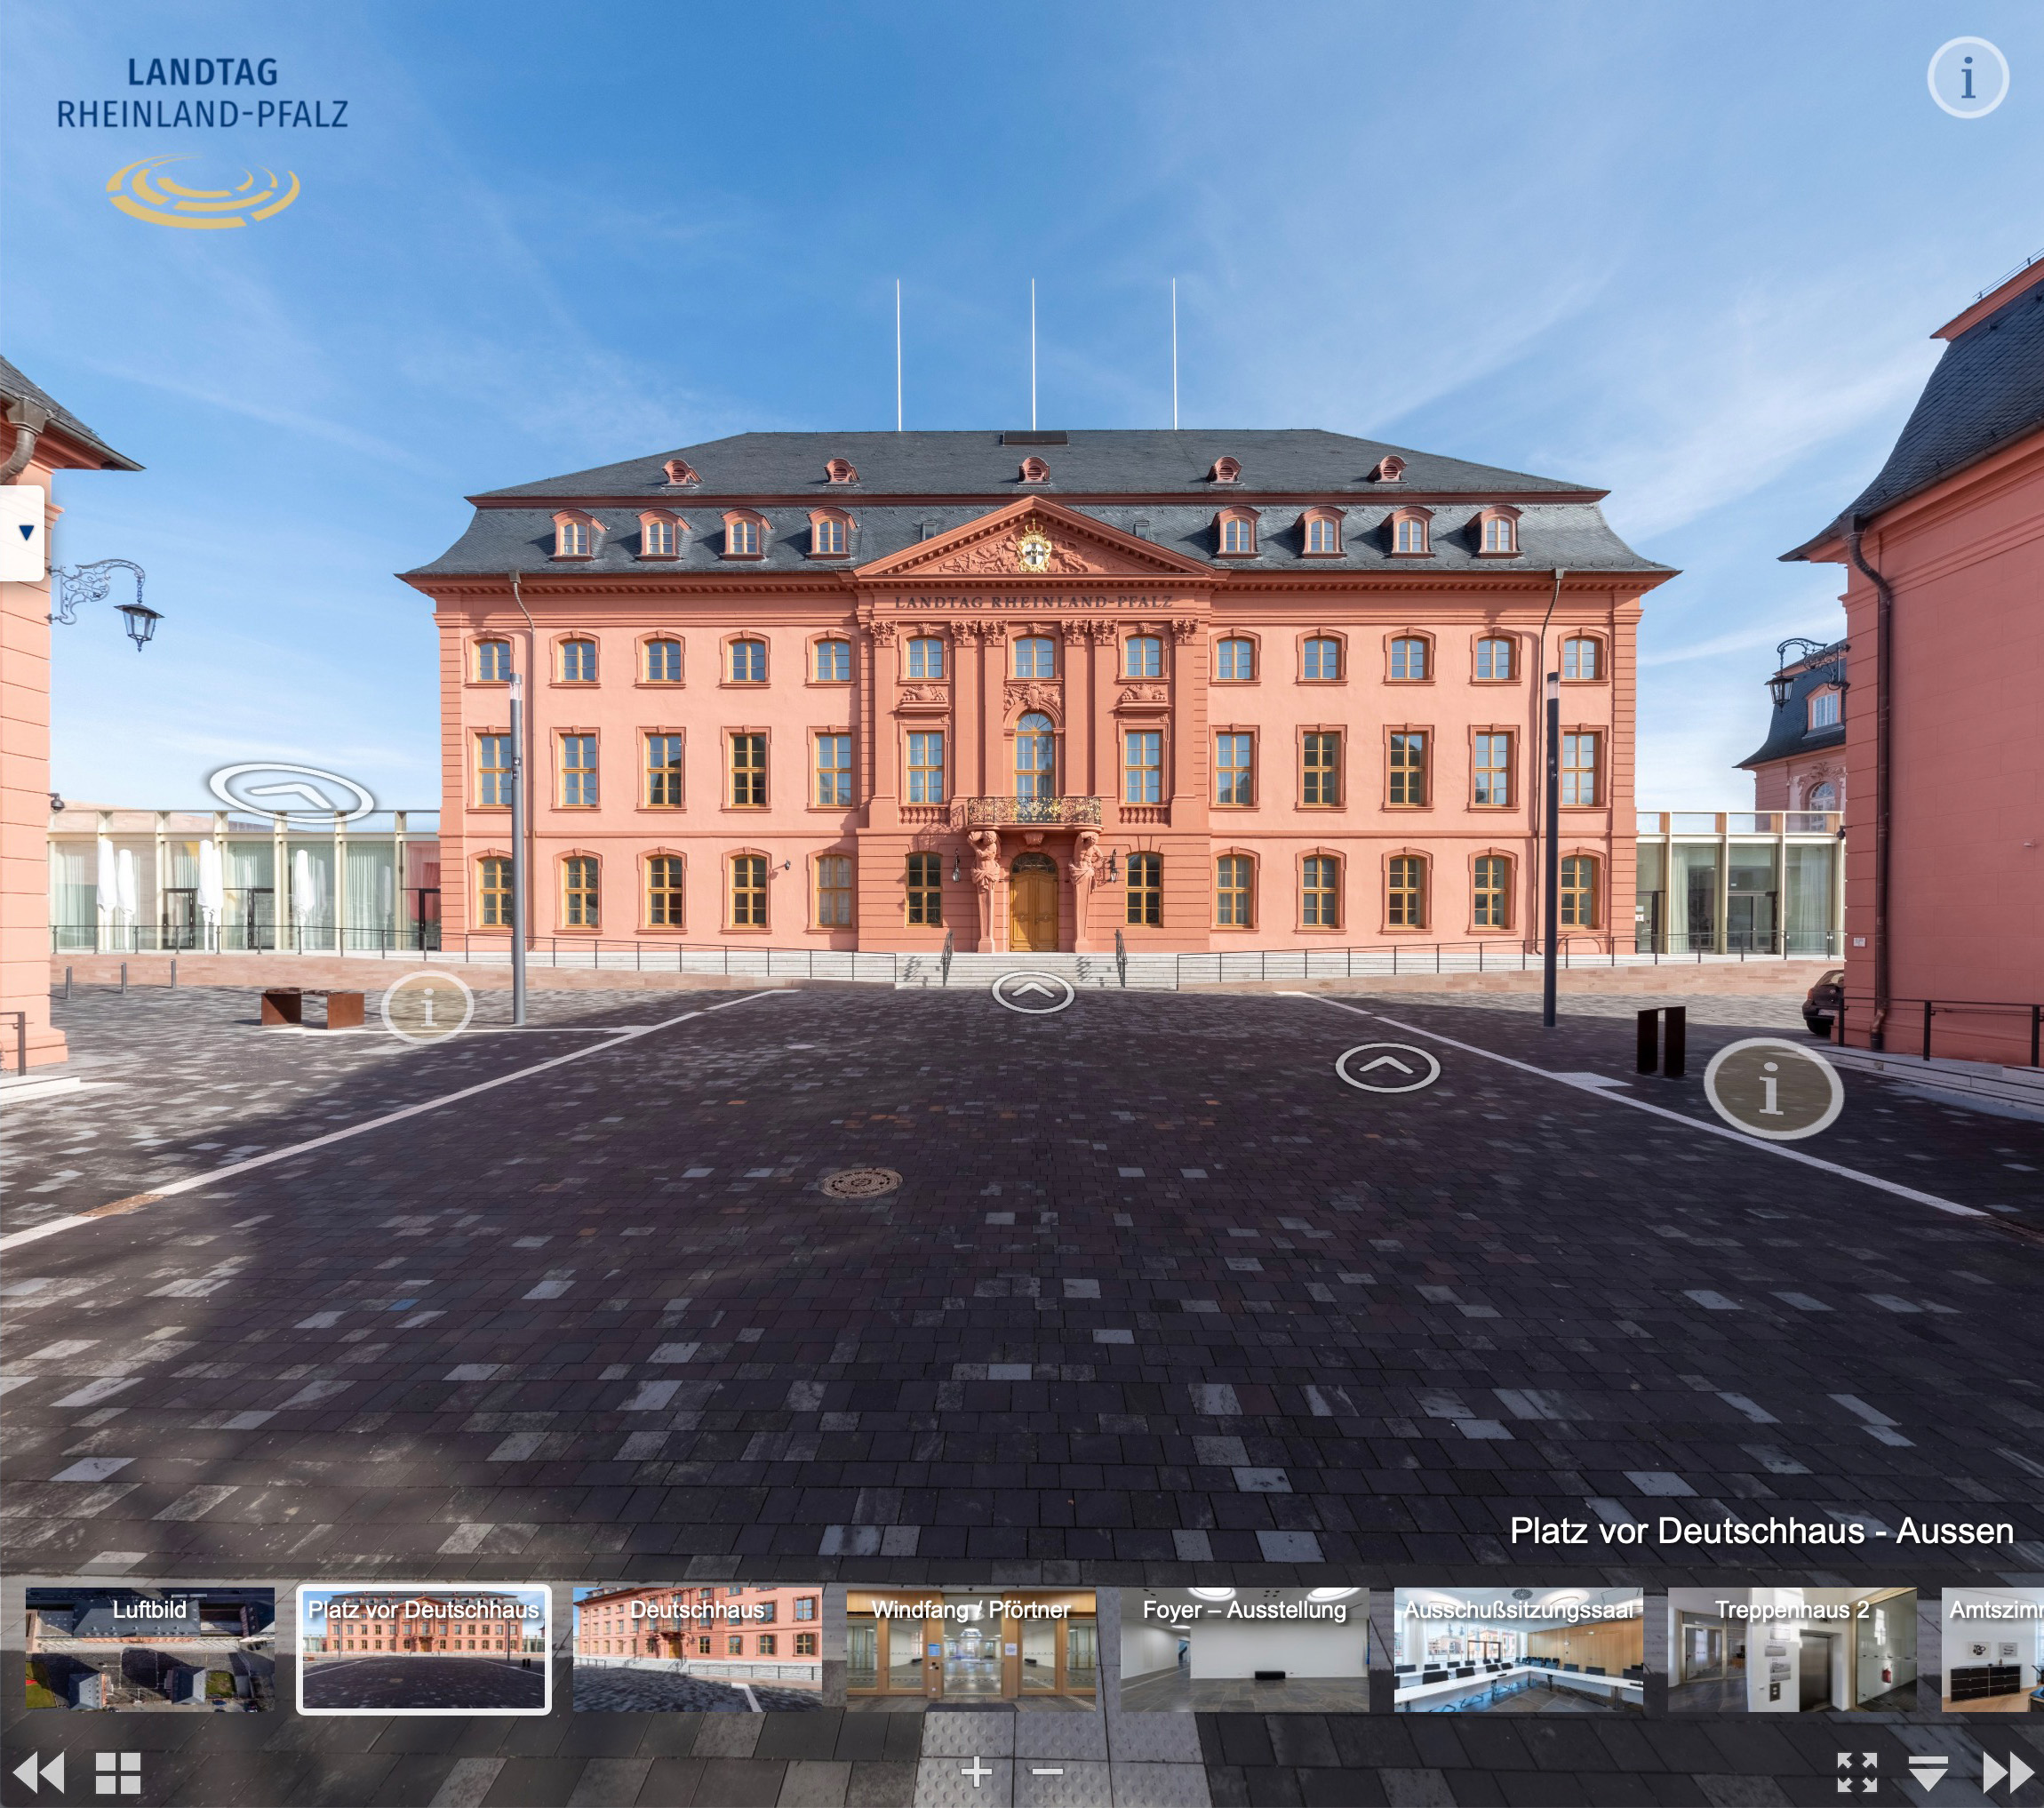 Virtuelle Tour durch den Landtag Rheinland-Pfalz von Chris Witzani, schnurstracks gestaltung und interaktion